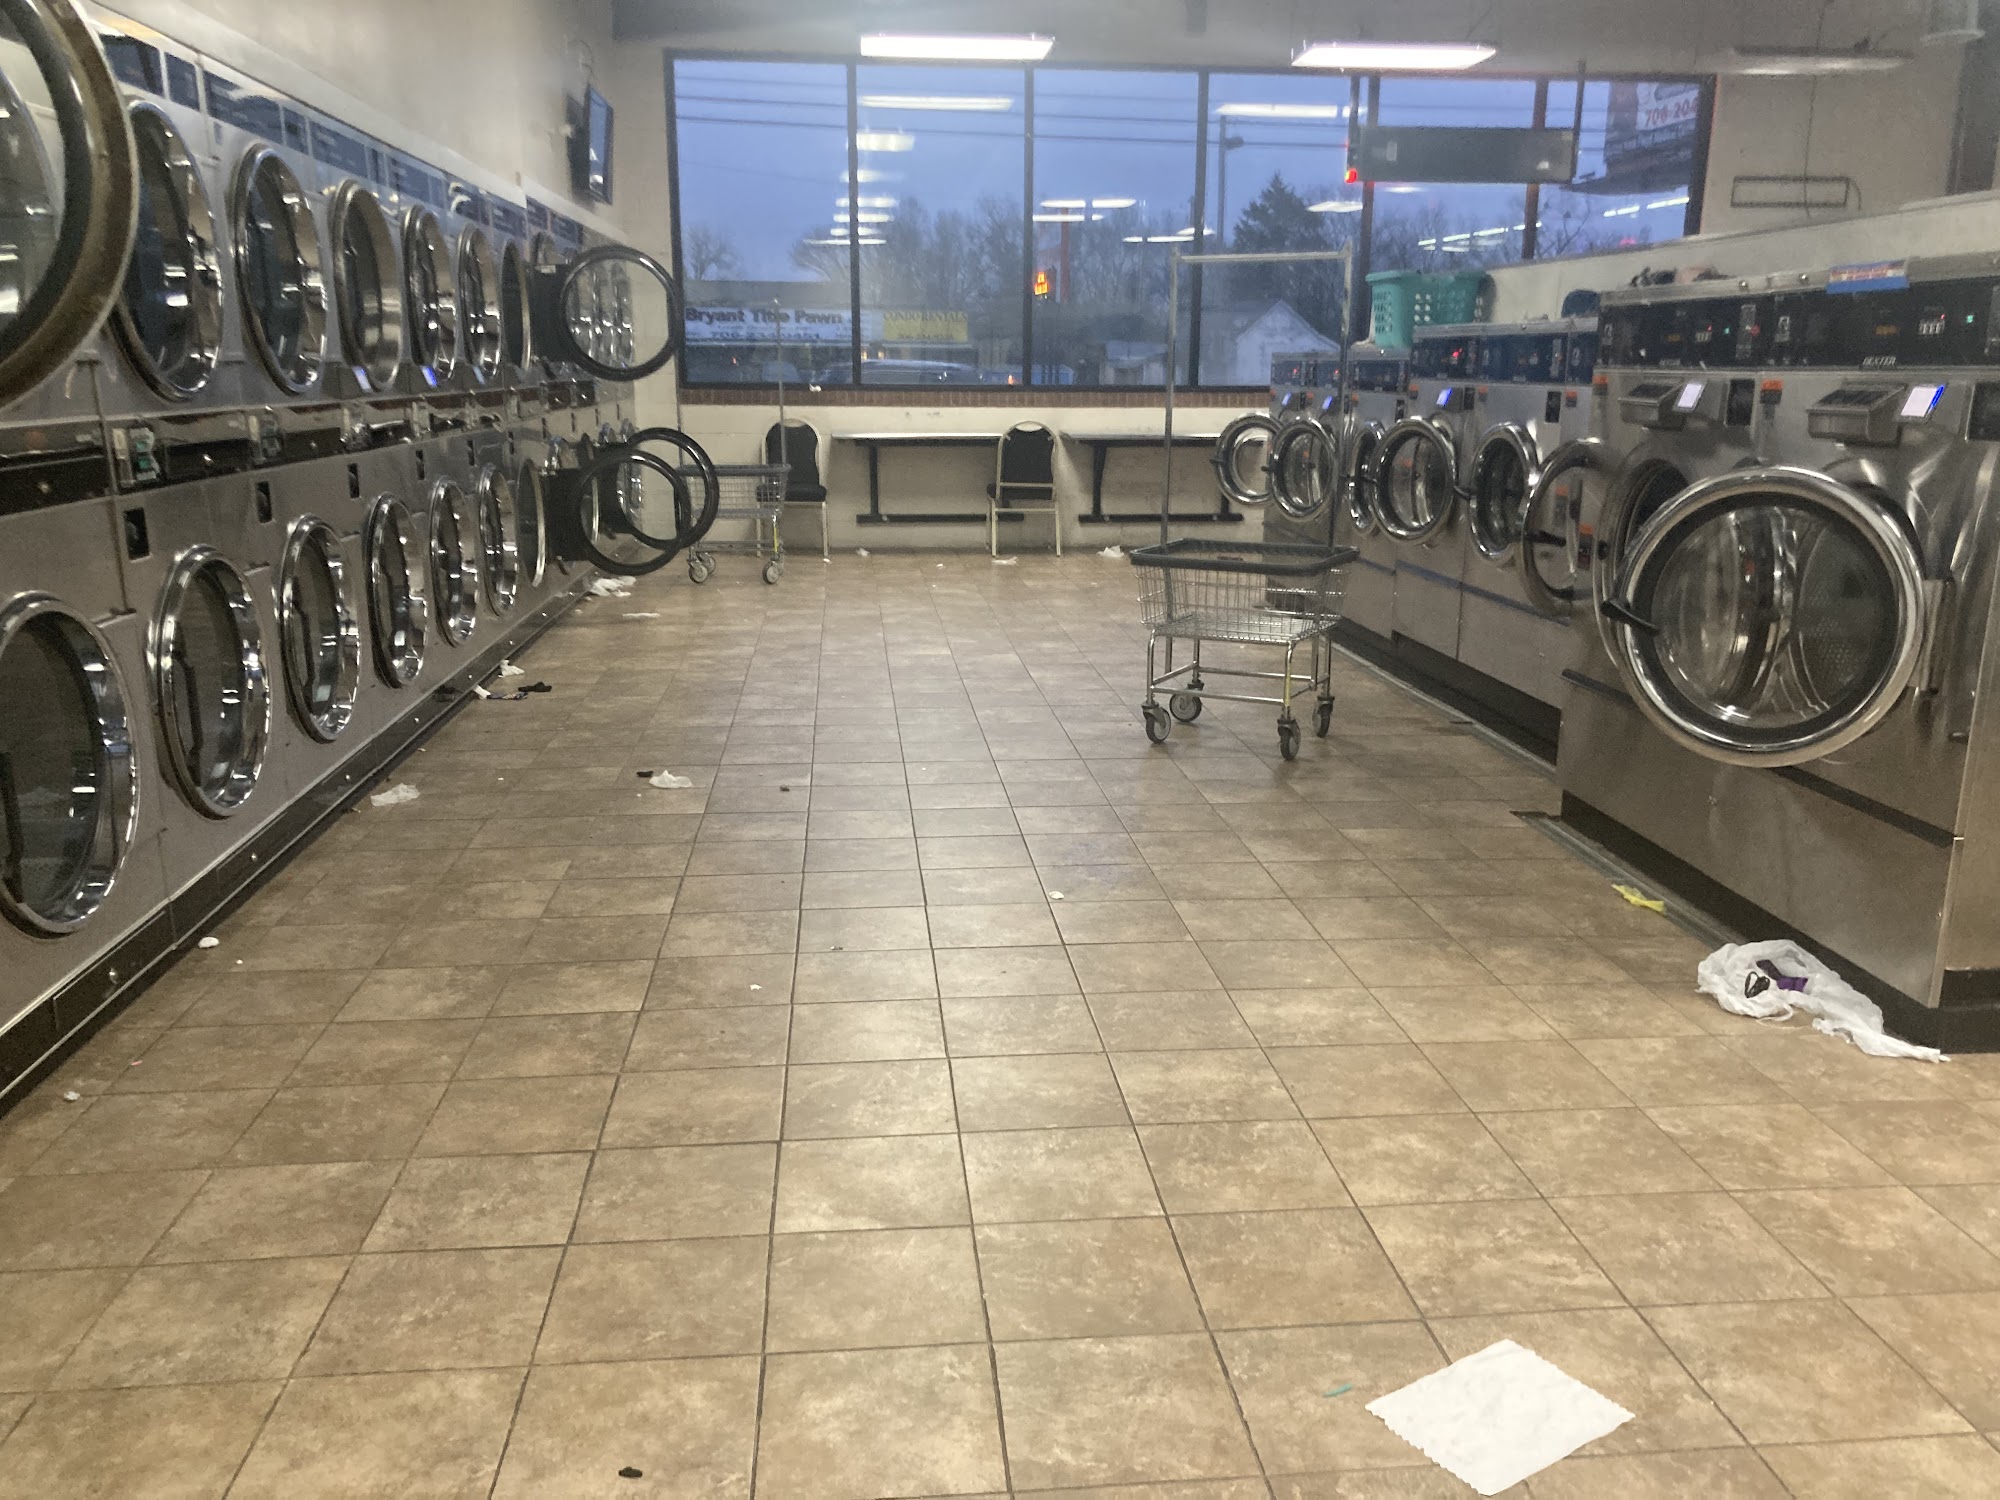 Shorter laundromat